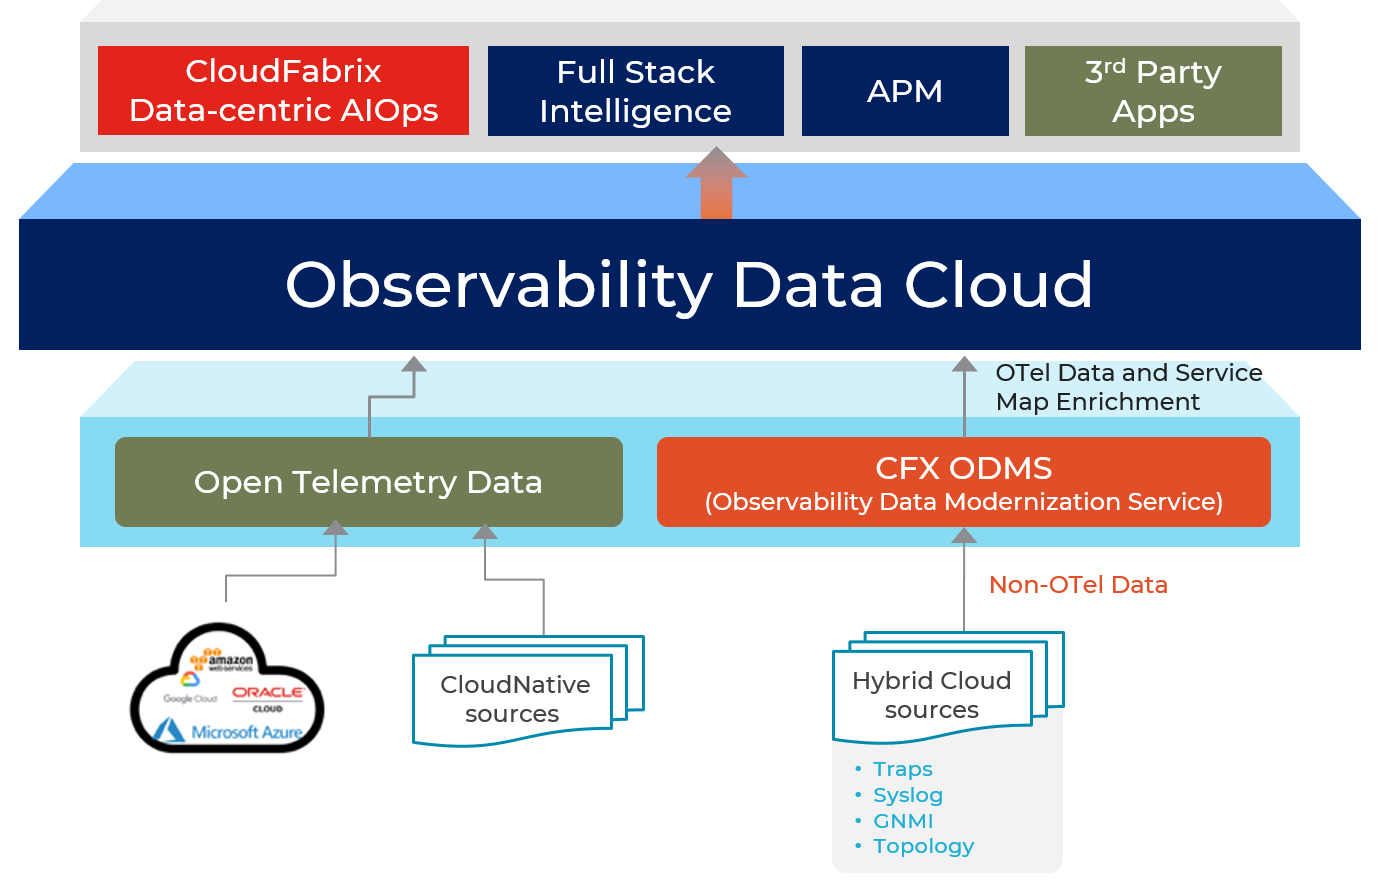 Observability Data Modernization Service